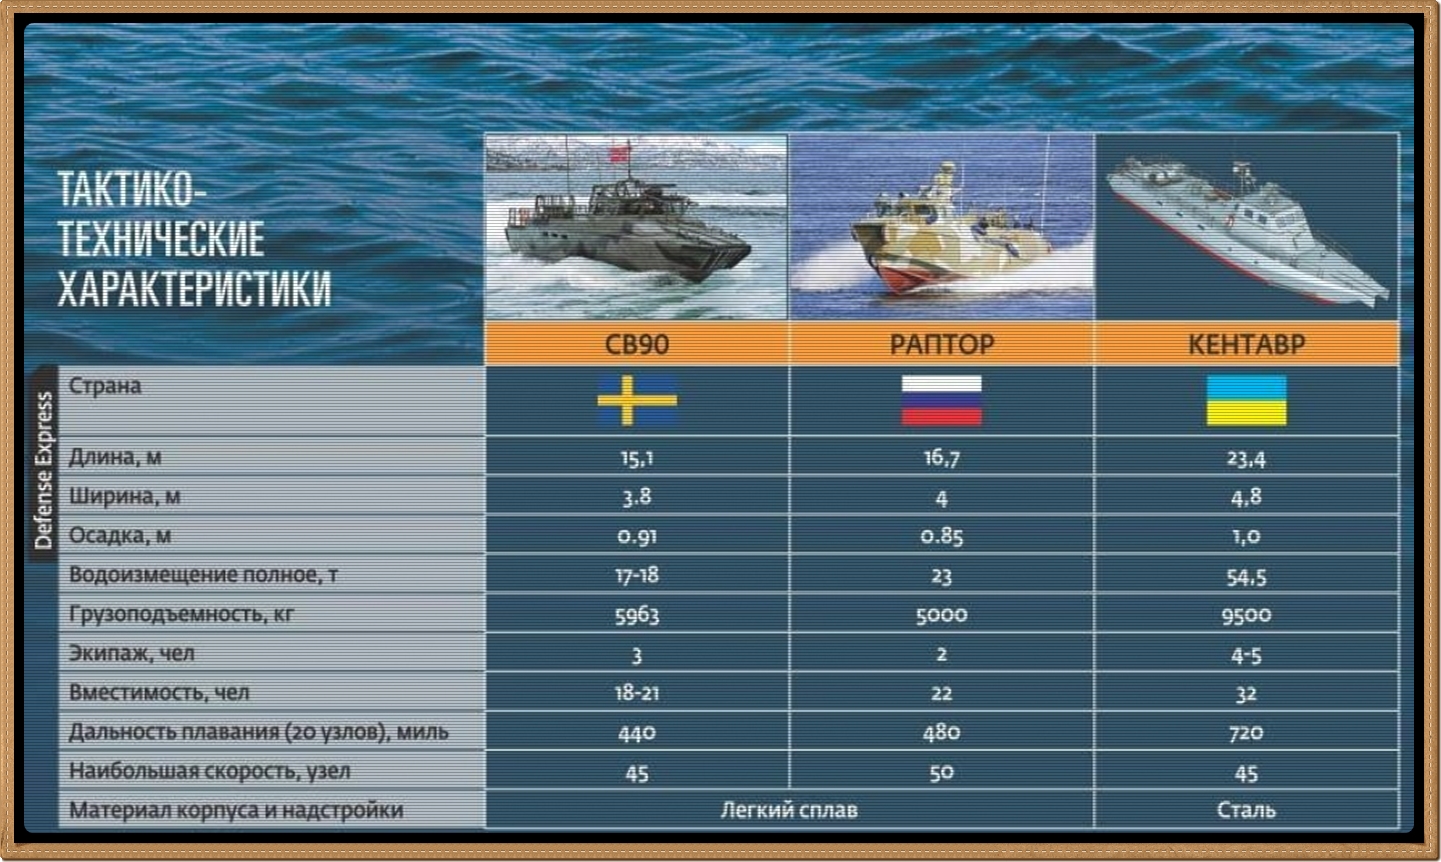 Потери чф на украине. Катер Раптор ТТХ. ВМФ России и Украины сравнение.